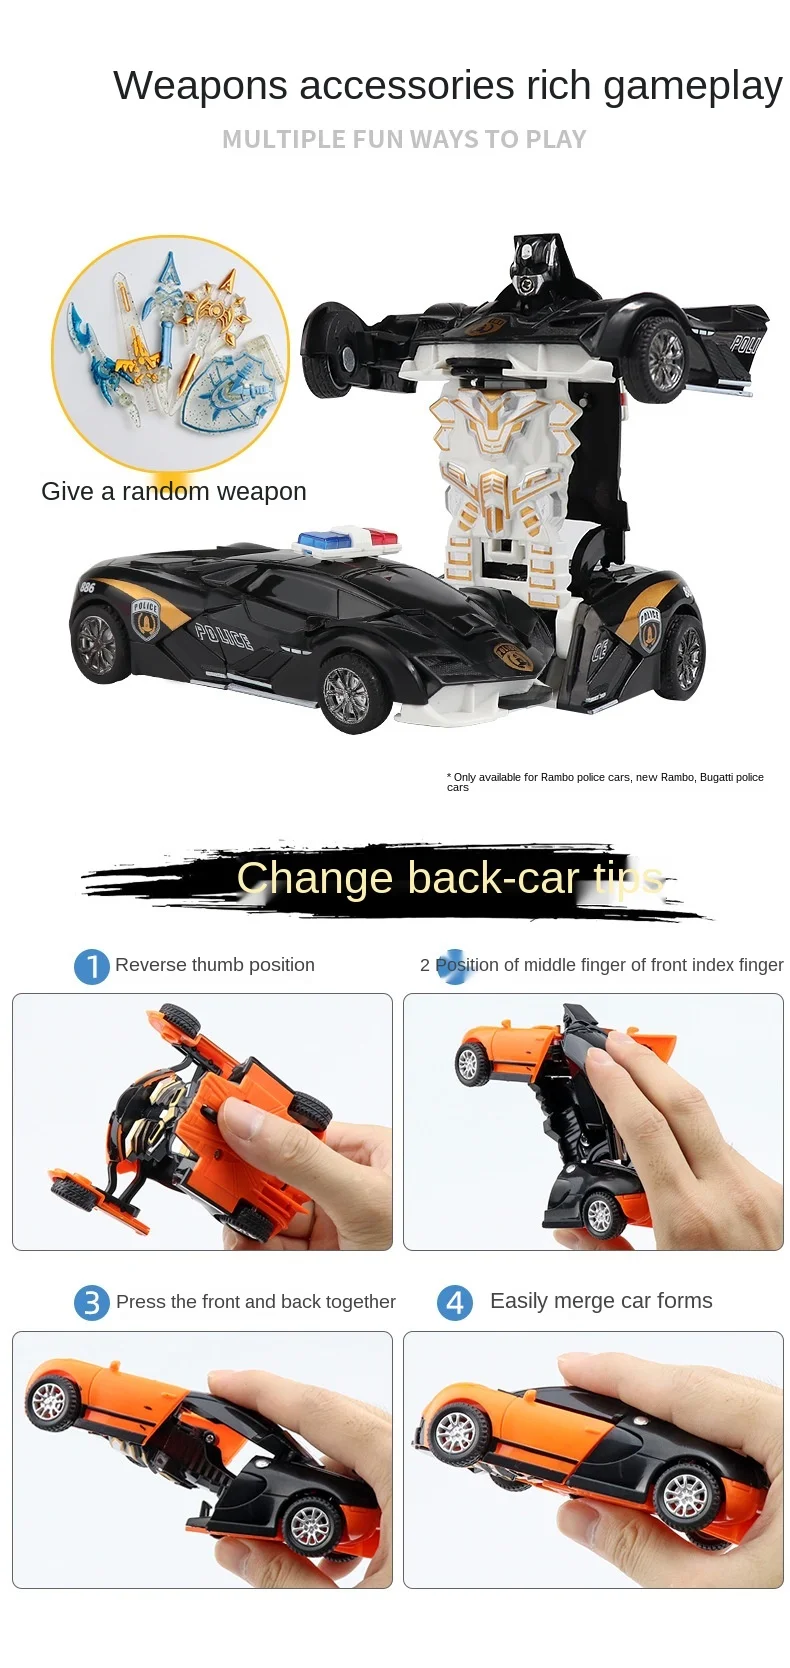 New One-key Deformation Car Toy Boys Amazing Gifts Kid